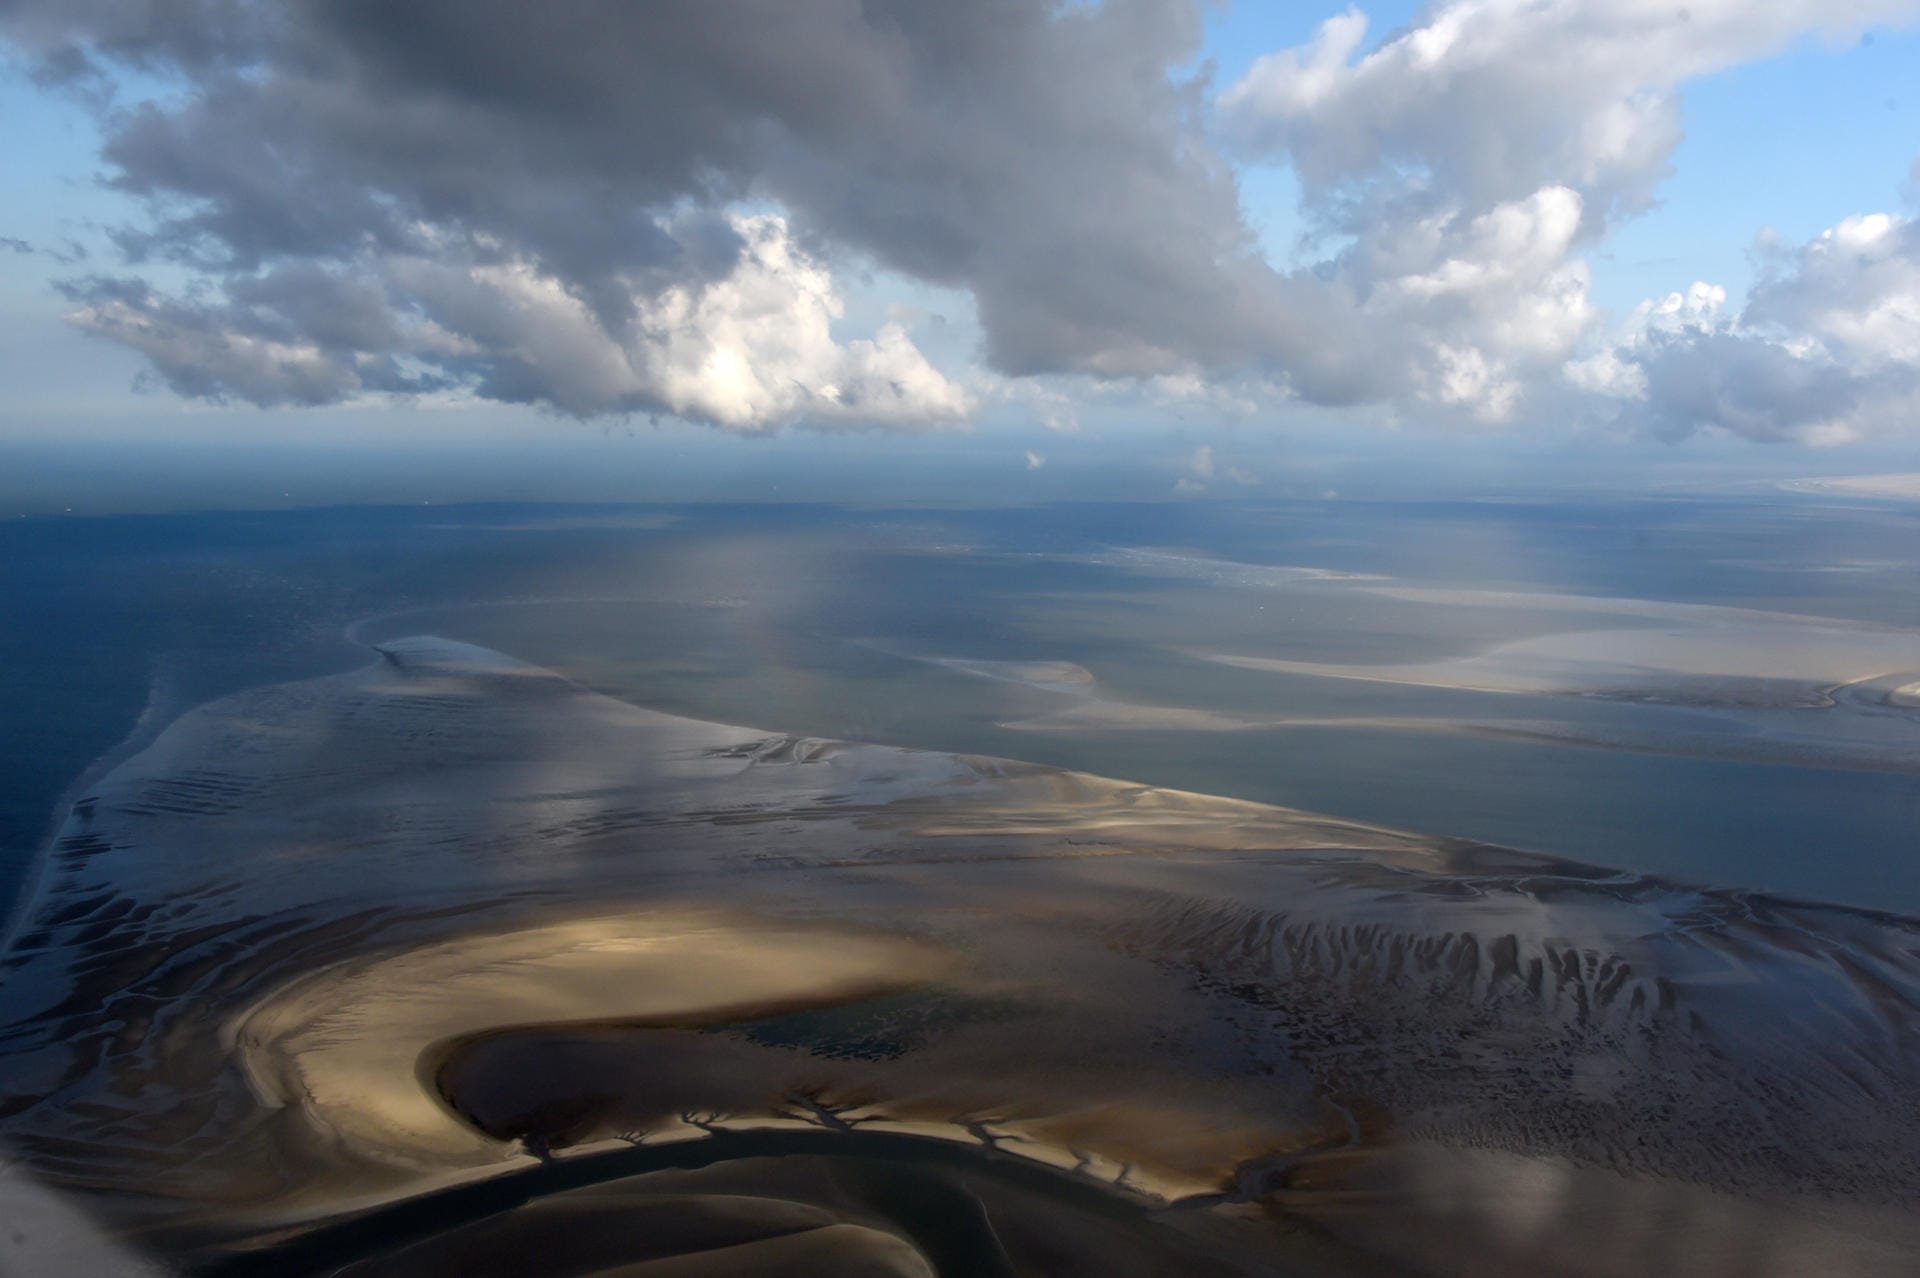 20 Jahre Schutz des Wattenmeers